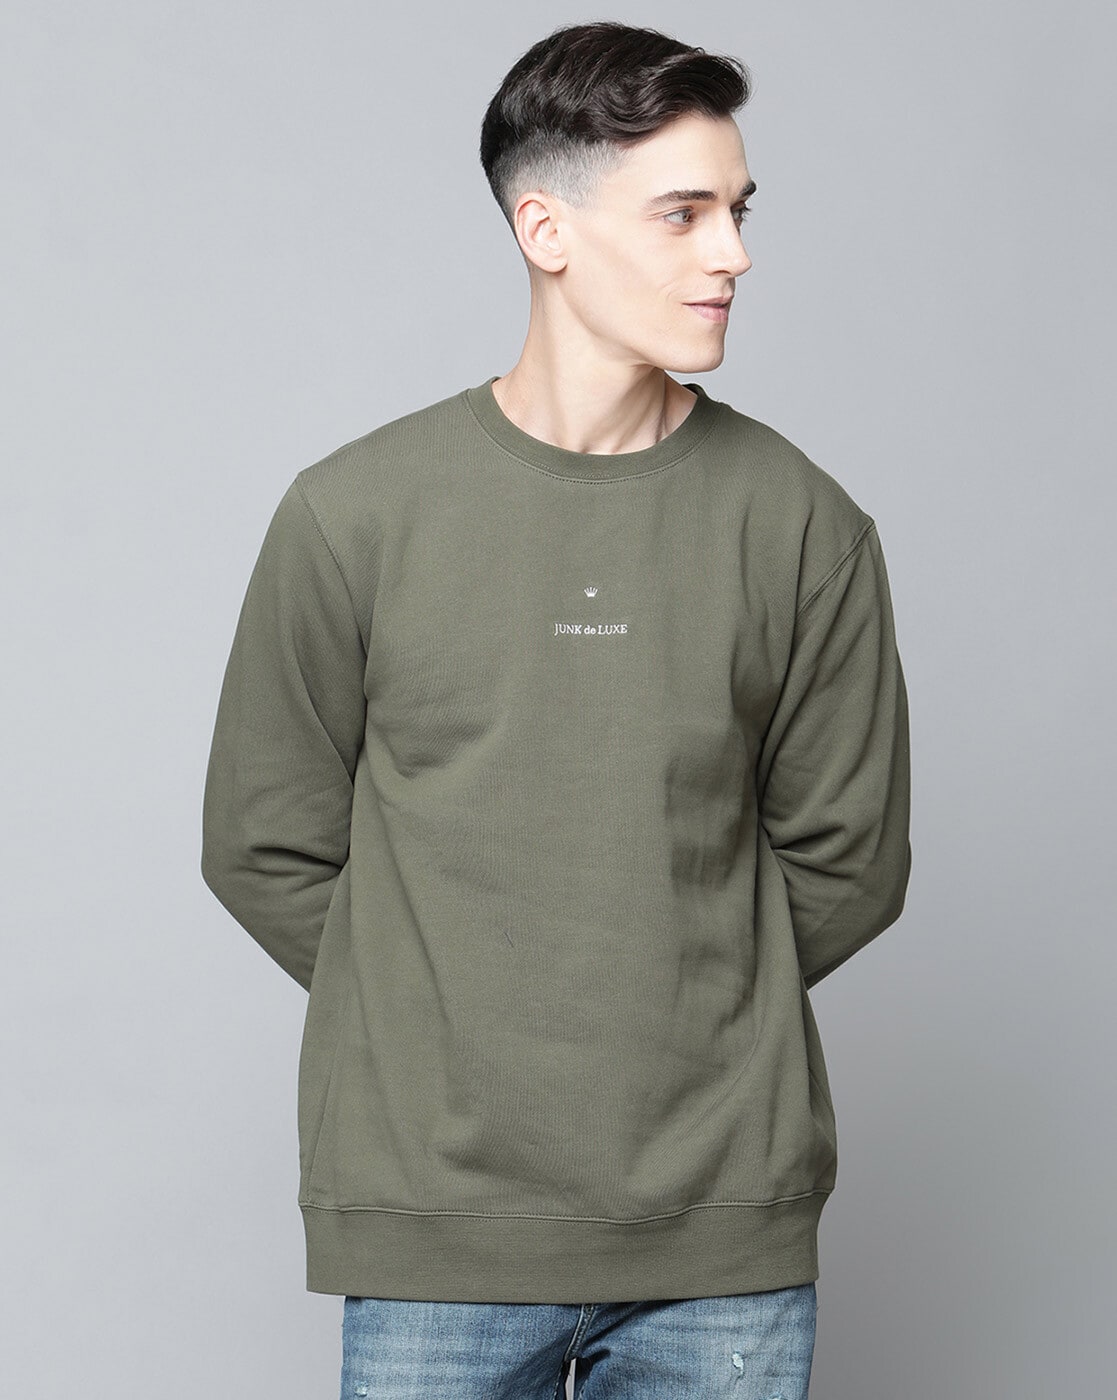 Buy Olive Sweatshirt & for Men by Online | Ajio.com